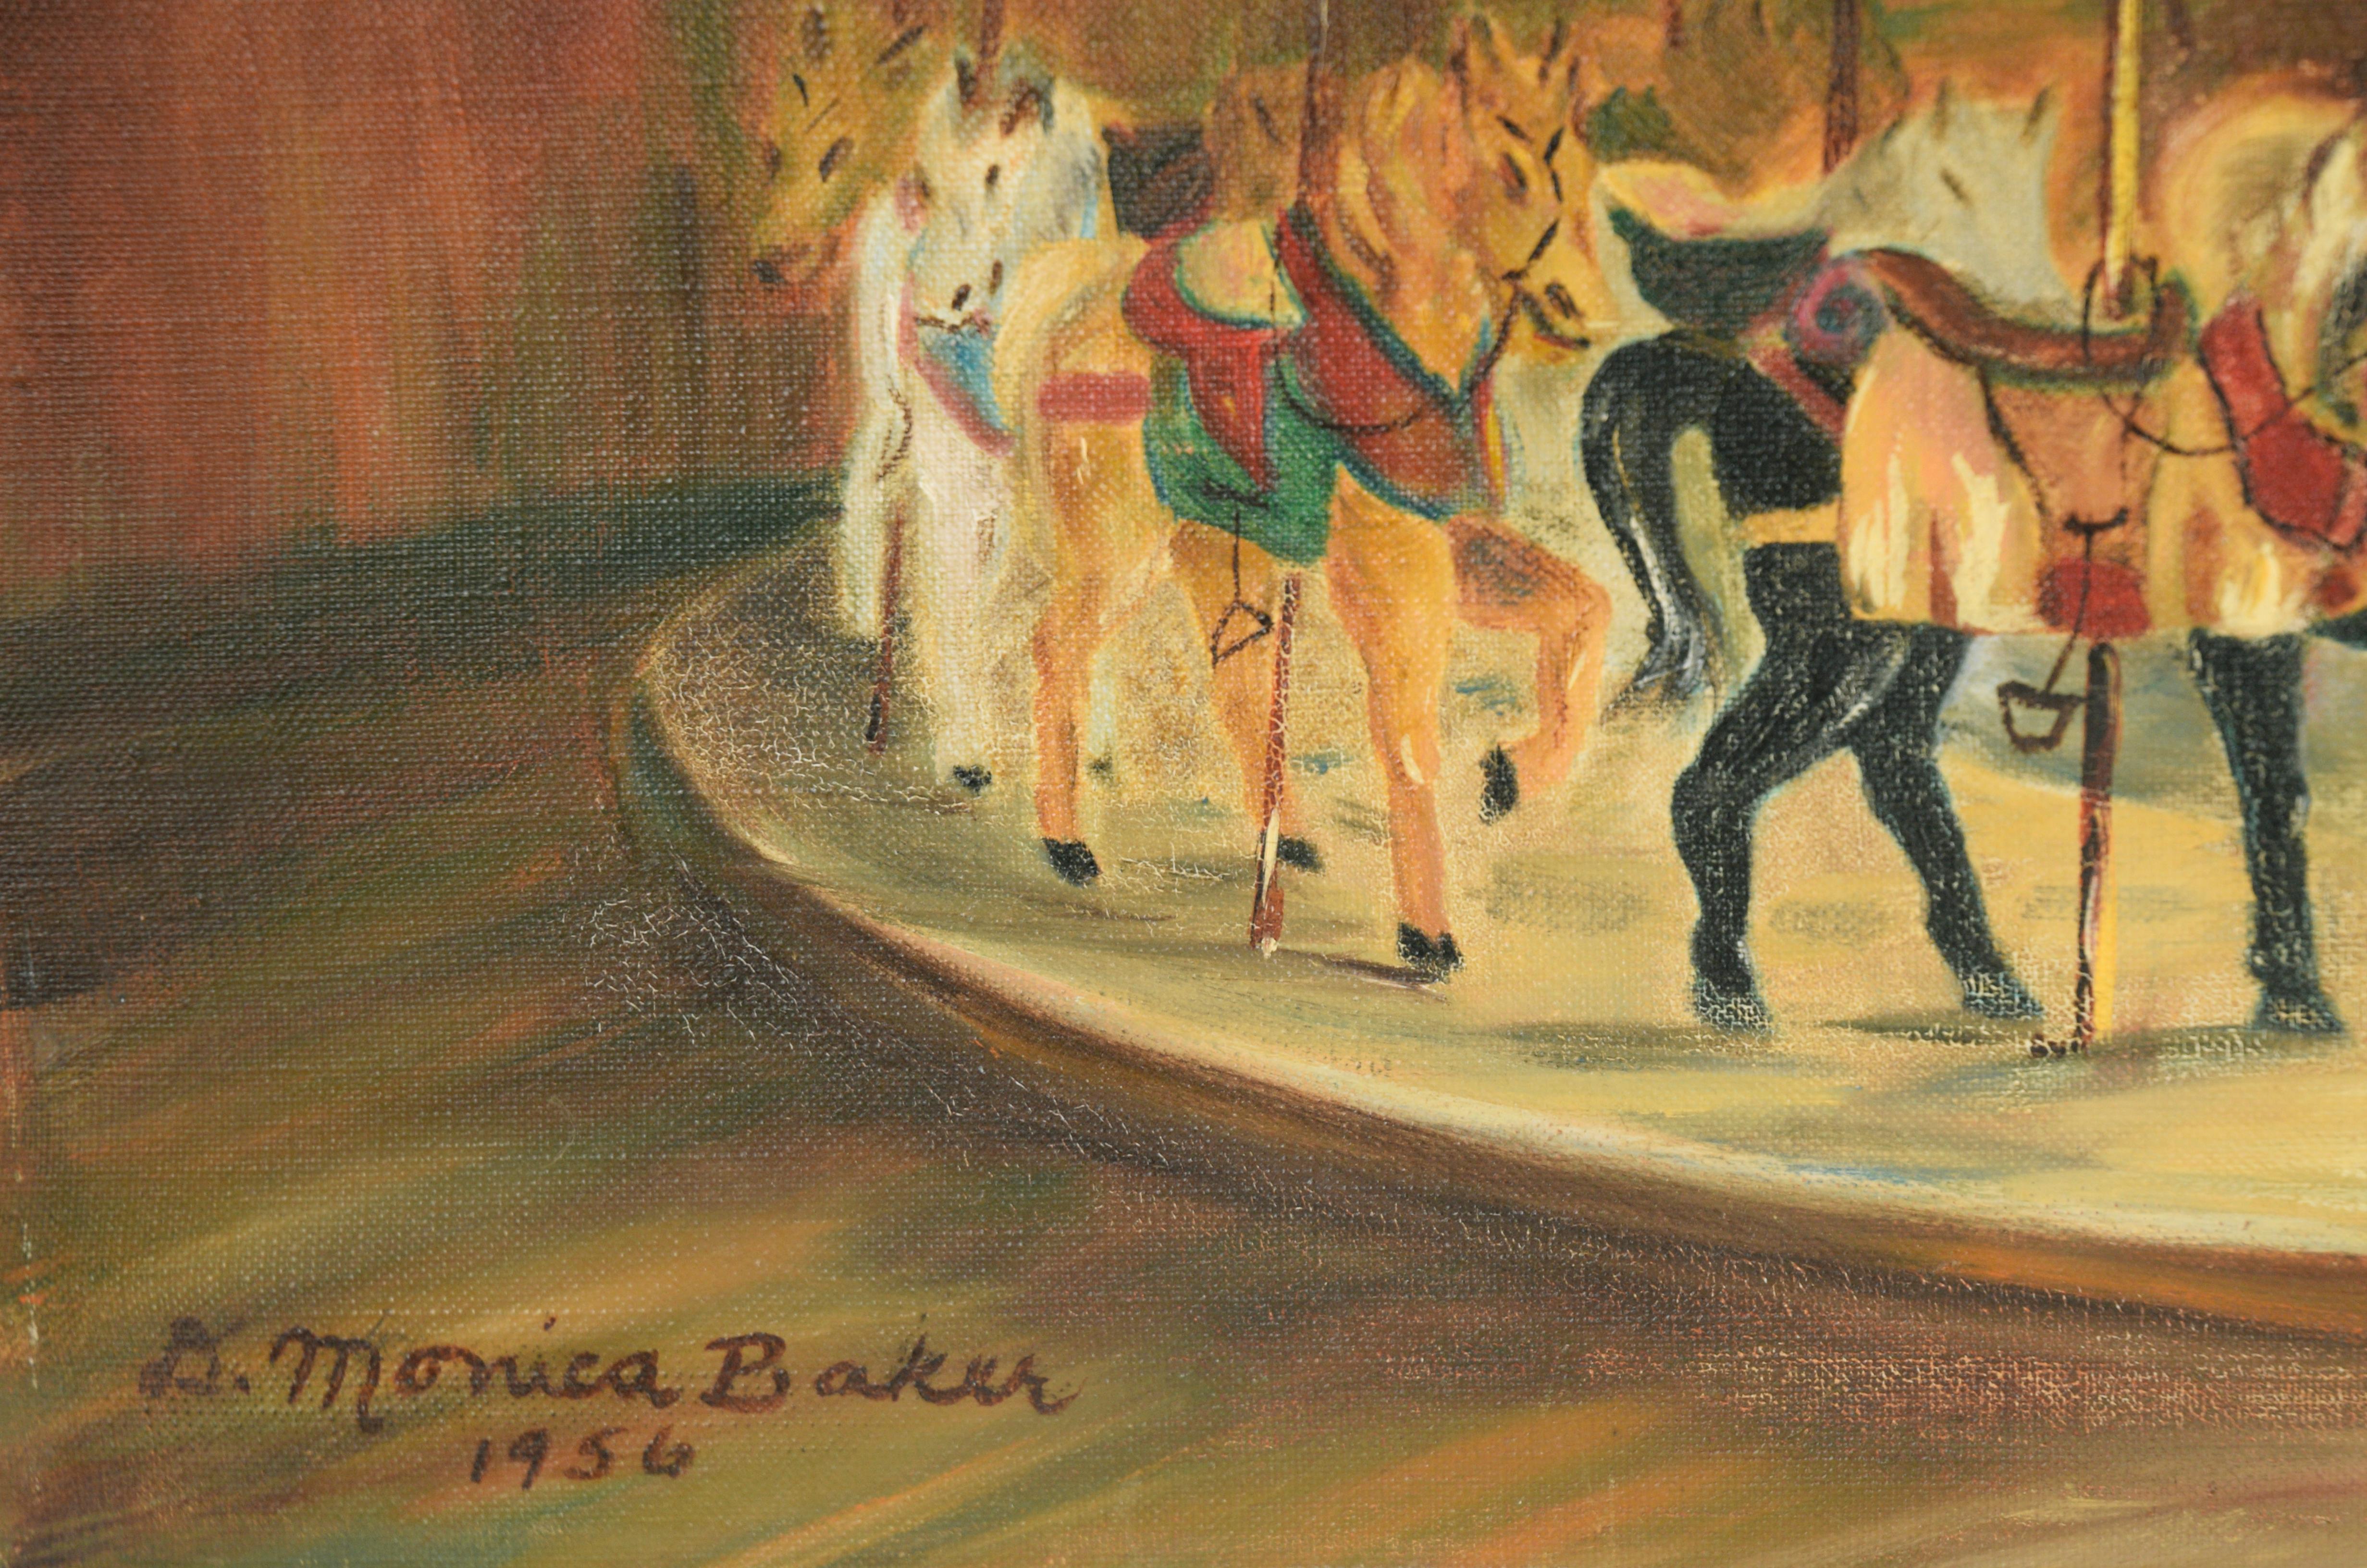 White Horse Carousel, 1956 - Original Oil Painting On Linen For Sale 3